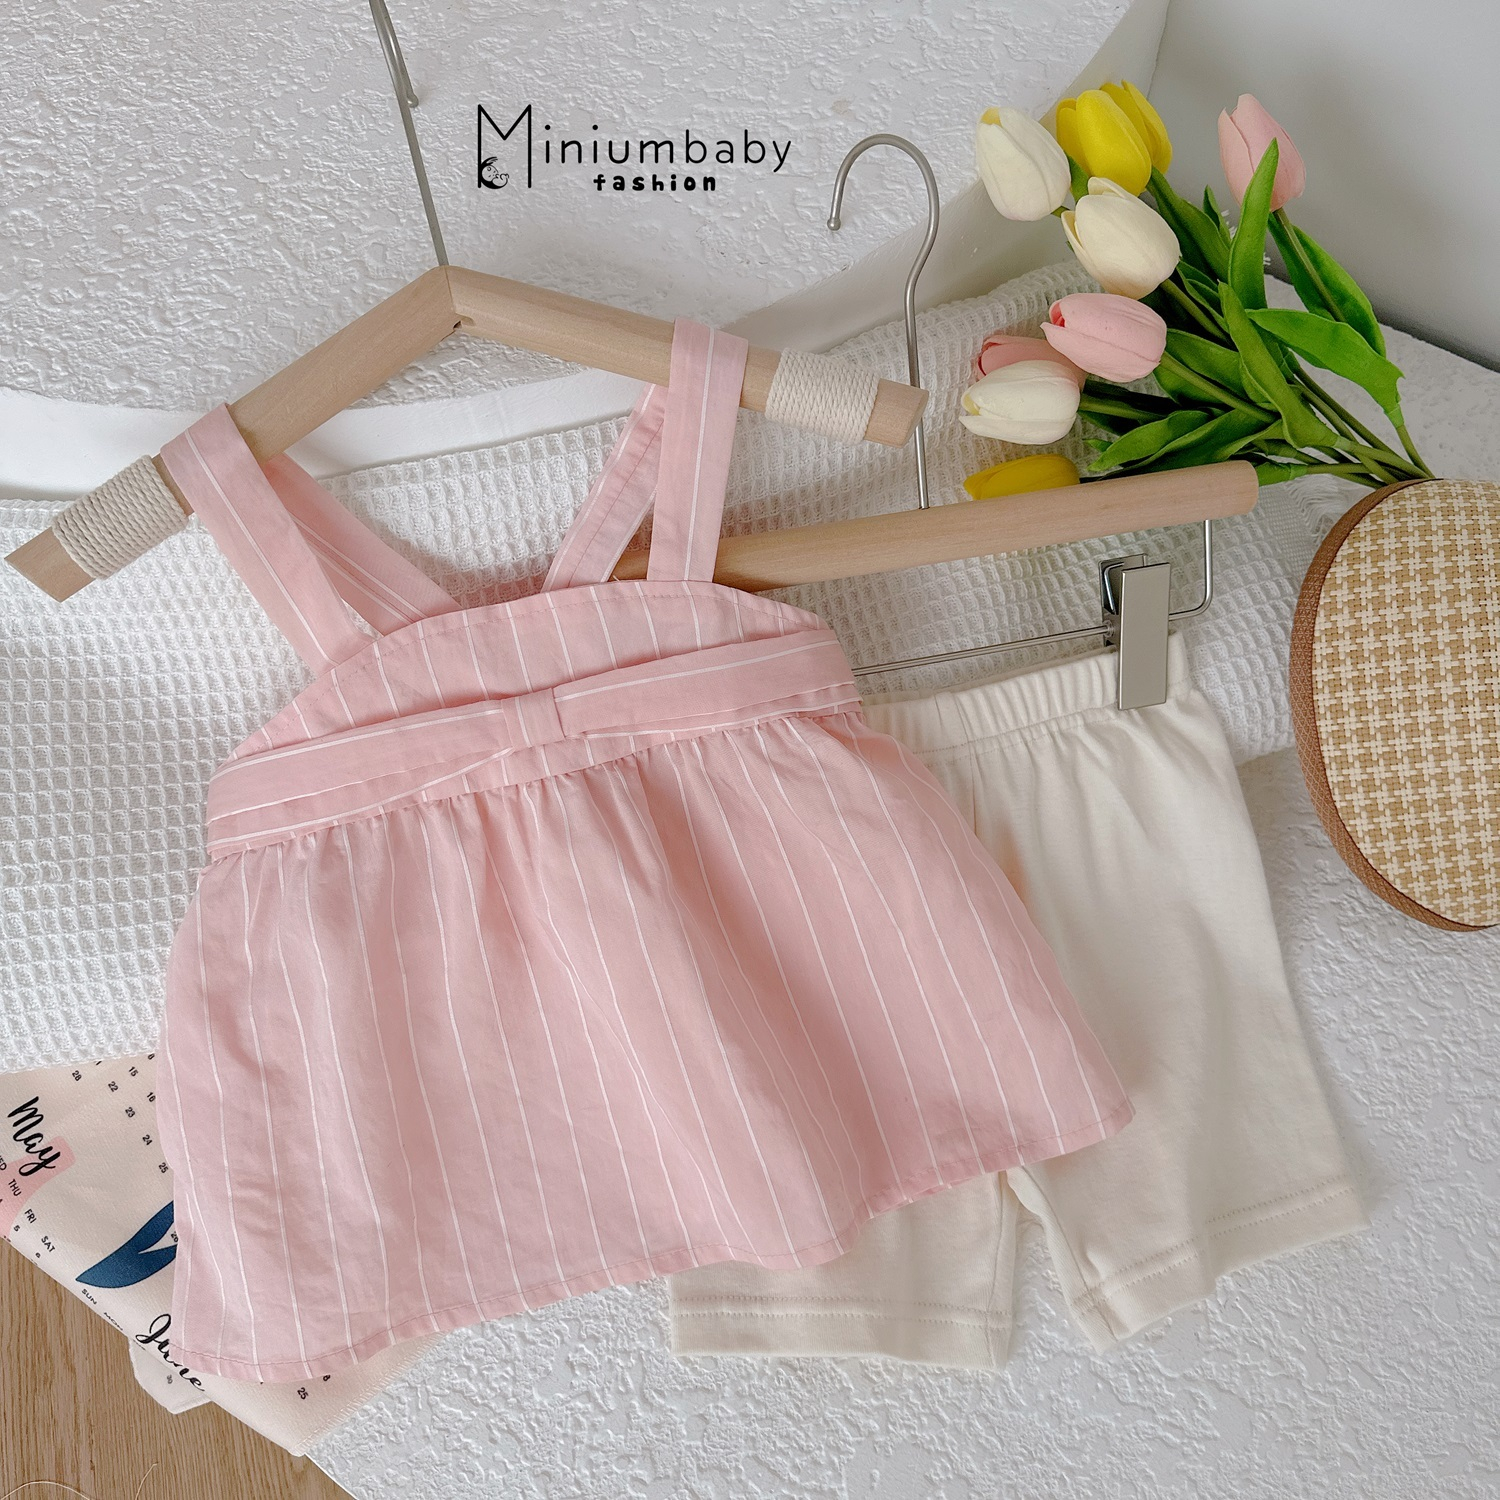 Bộ Babydoll 2 dây nơ ngực cho bé gái, set đồ mặc hè chất liệu 100% cotton thoáng khí mát mẻ Miniumbaby-SB1530